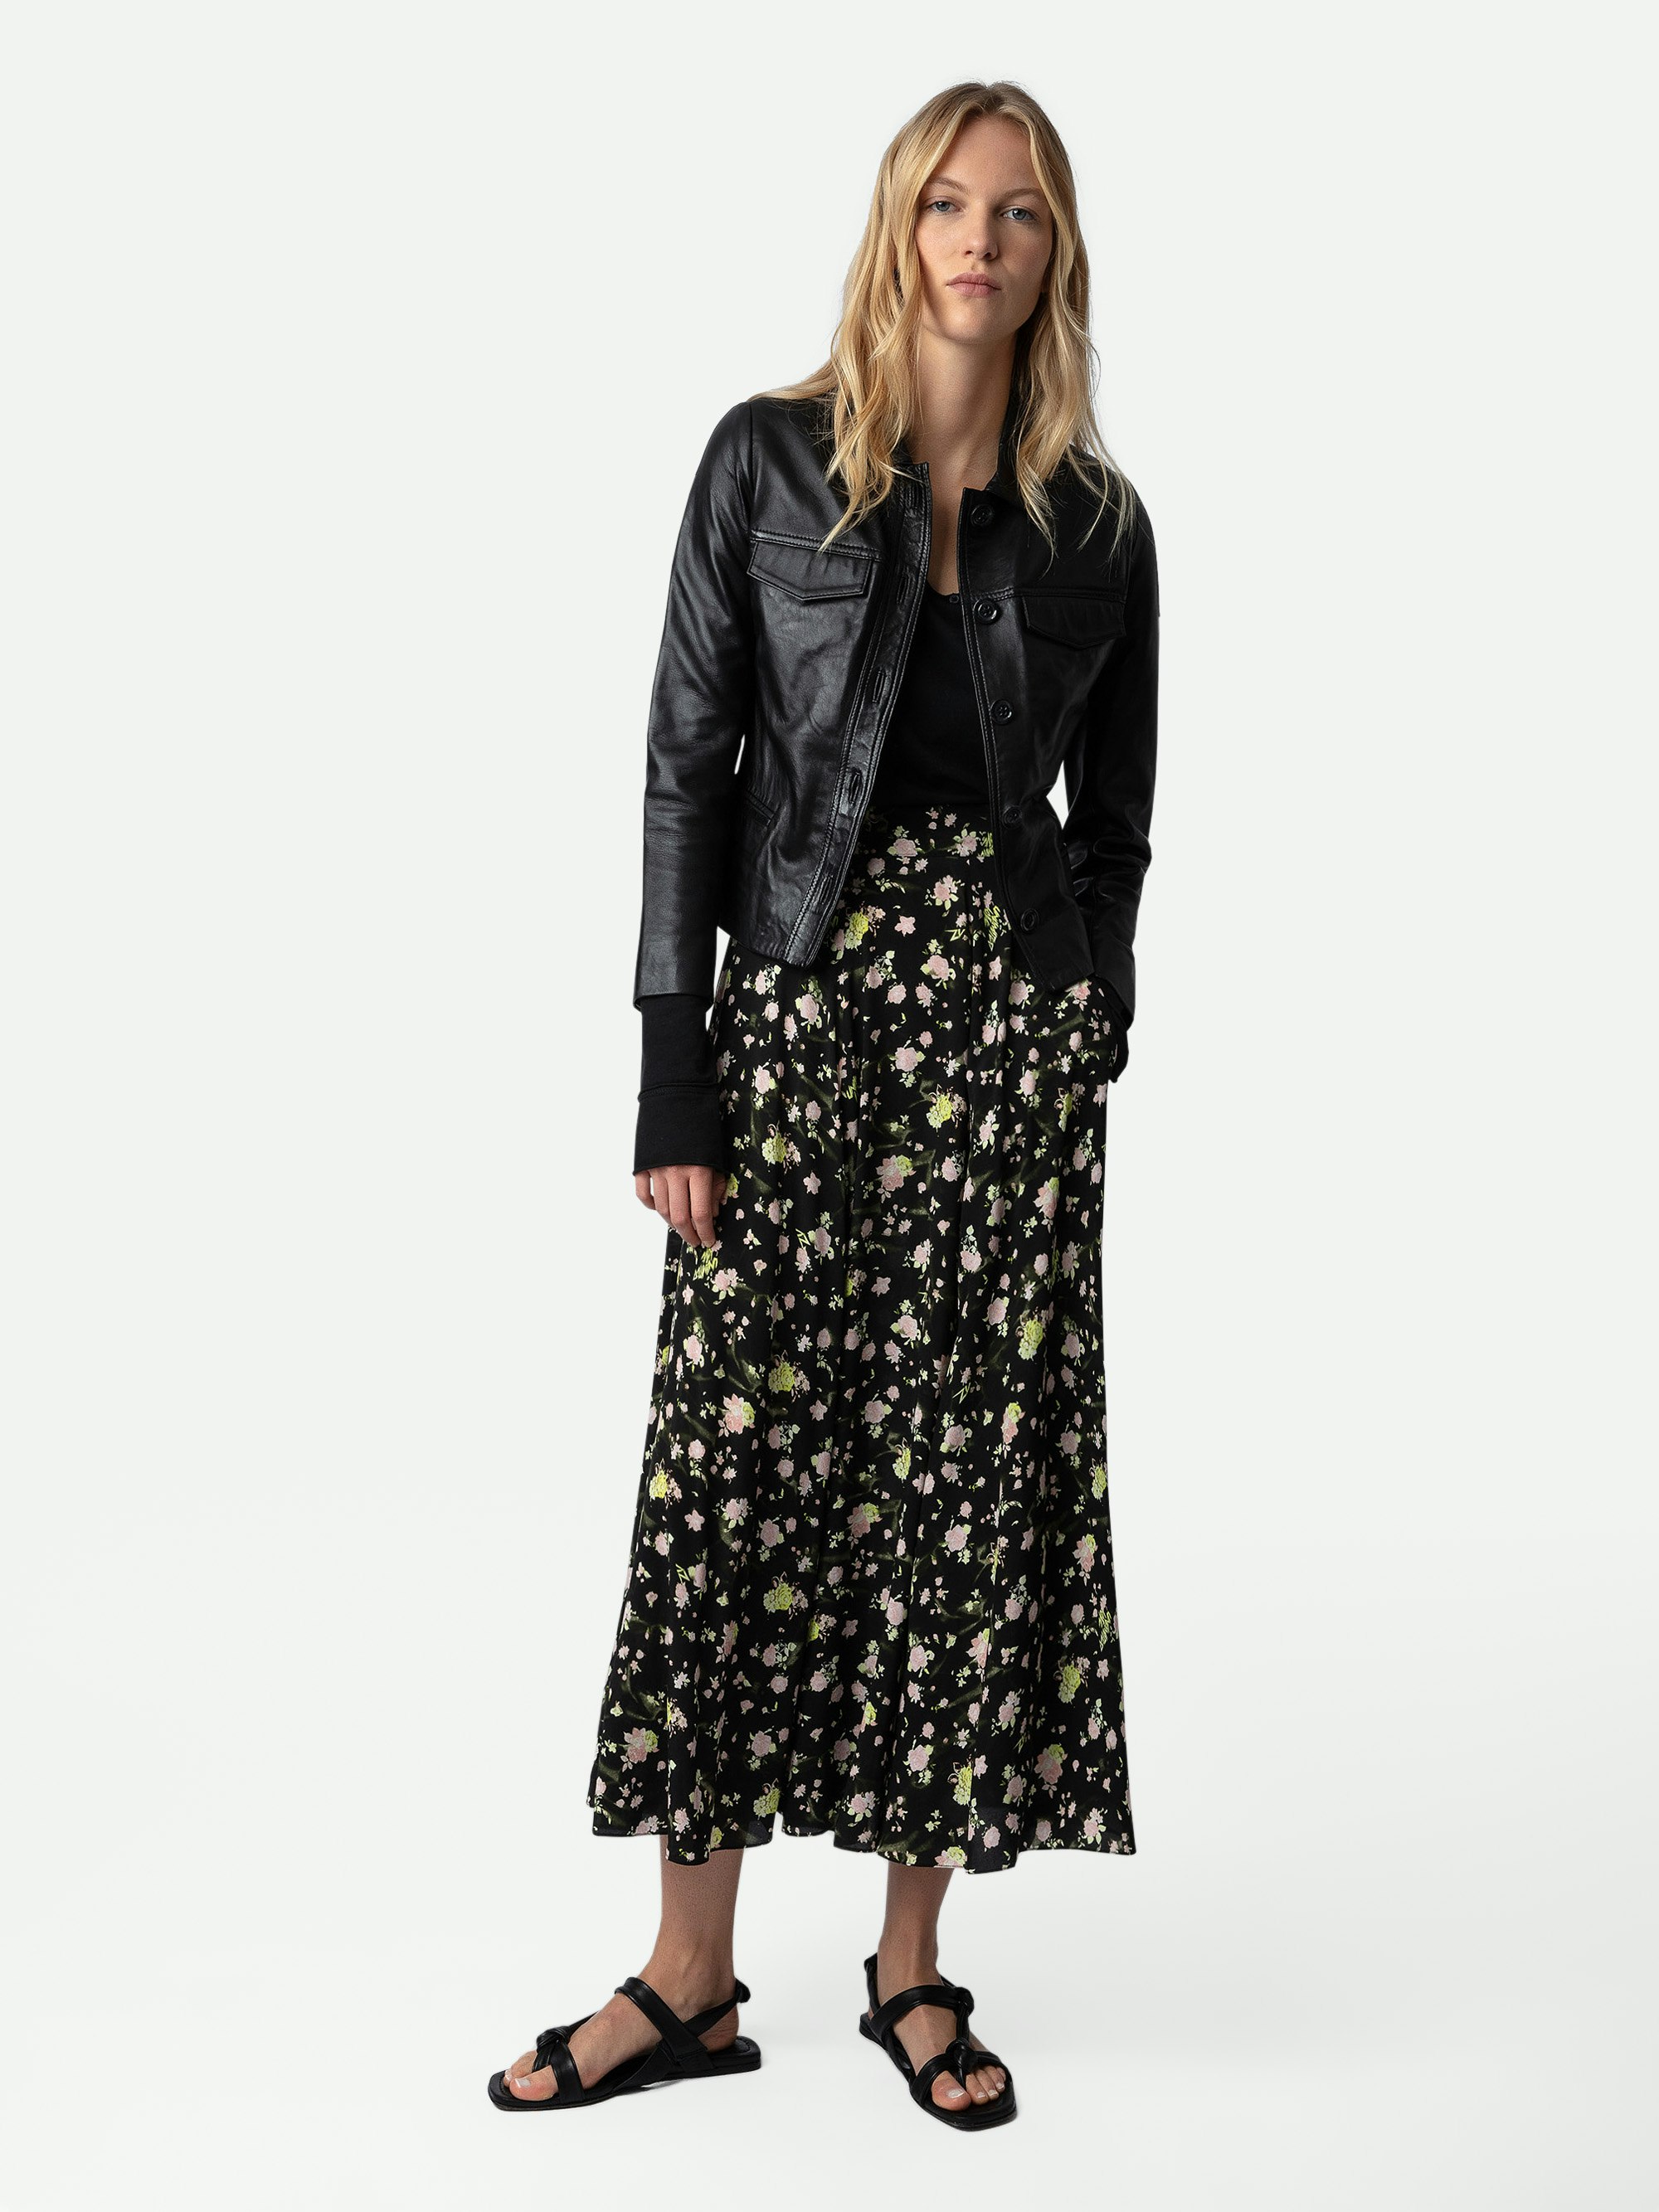 Joyo Soft Crinkle Roses Skirt - Women’s long black floral-print skirt.